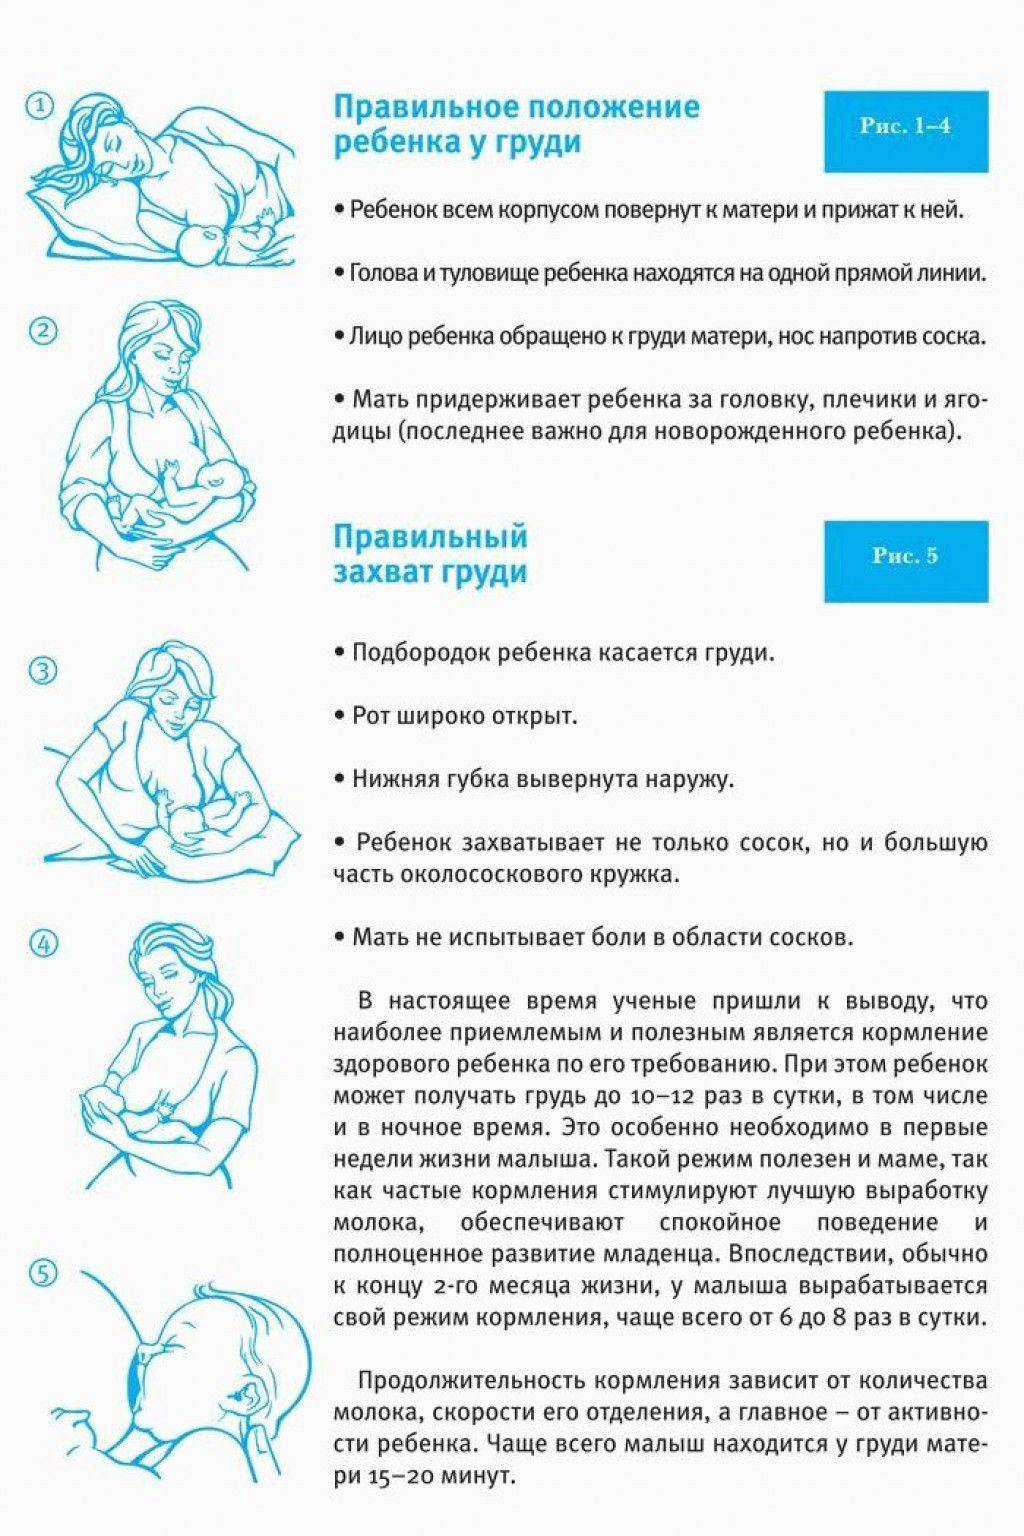 Грудное кормление новорожденного норма. Как правильно приложить ребенка к грудному вскармливанию. Правильное положение для кормления новорожденного грудным молоком. Как правильно приложить ребенка к грудному вскармливанию лежа. Правильное положение младенца при грудном вскармливании.